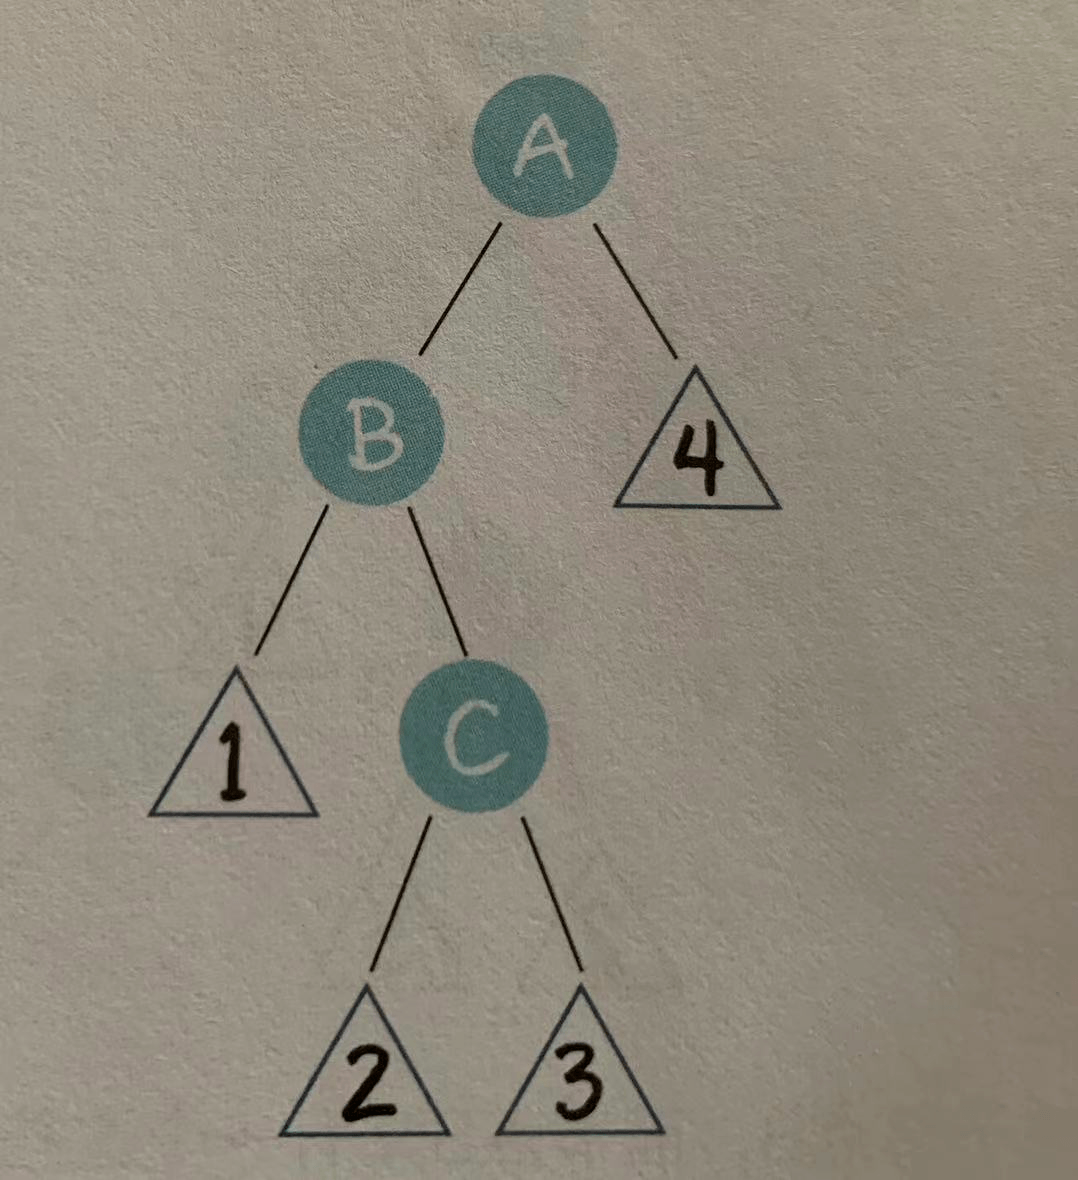 深入理解数据结构--二叉树（进阶篇1）